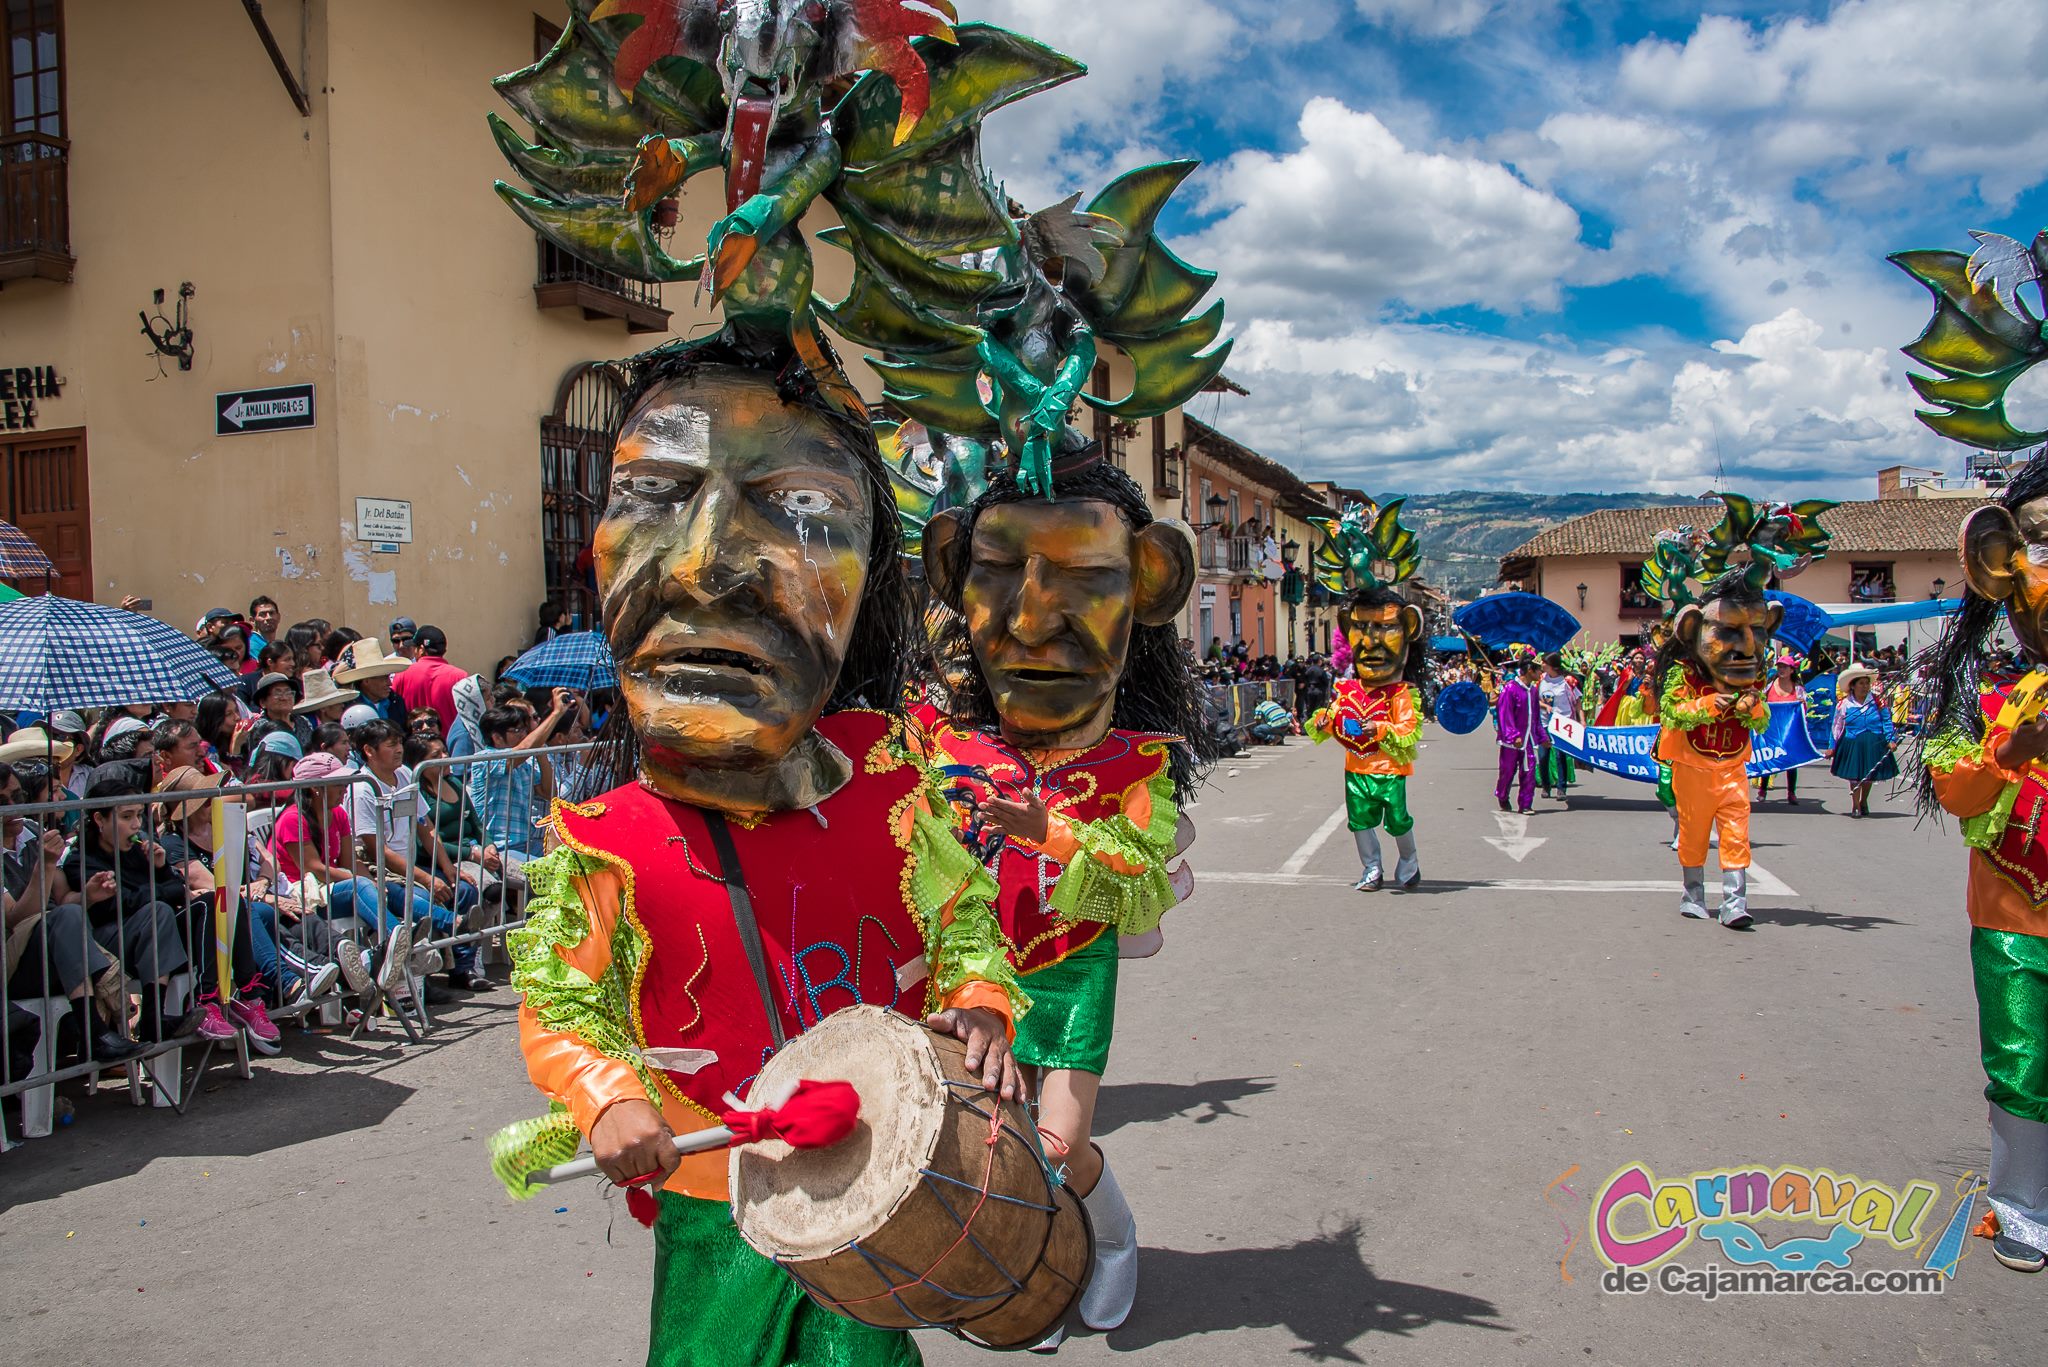 Los pasacalles unen a los barrios cajamarquinos. (Carnaval de Cajamarca Facebook)